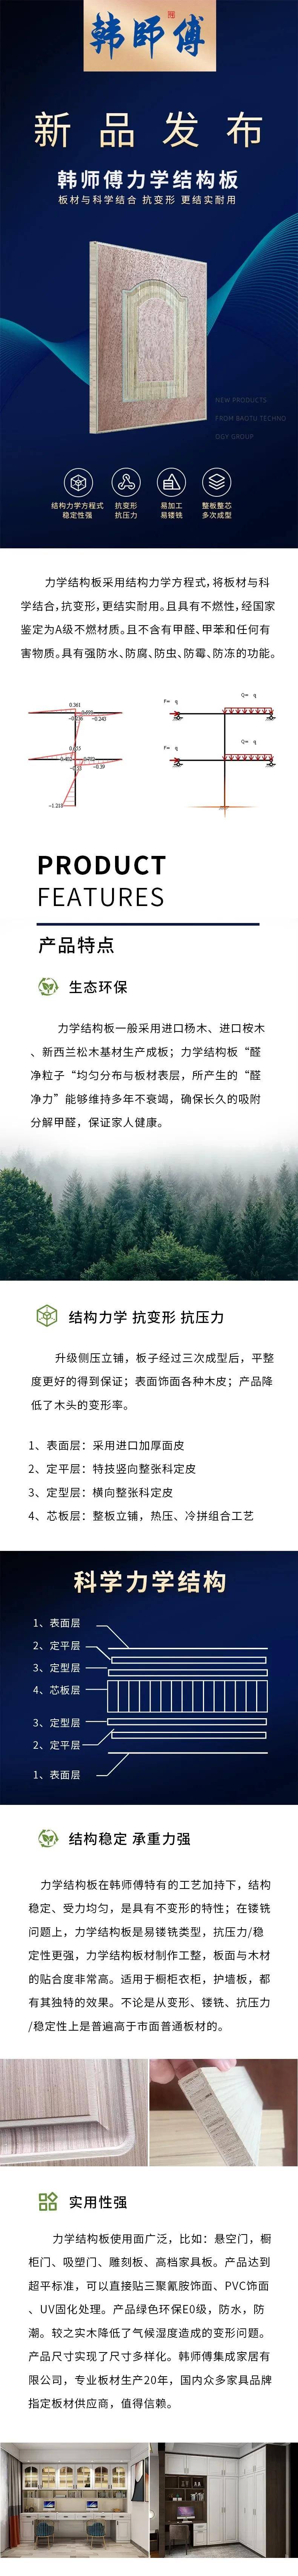 环保板材排行榜_2020中国十大环保板材品牌排名正式公布